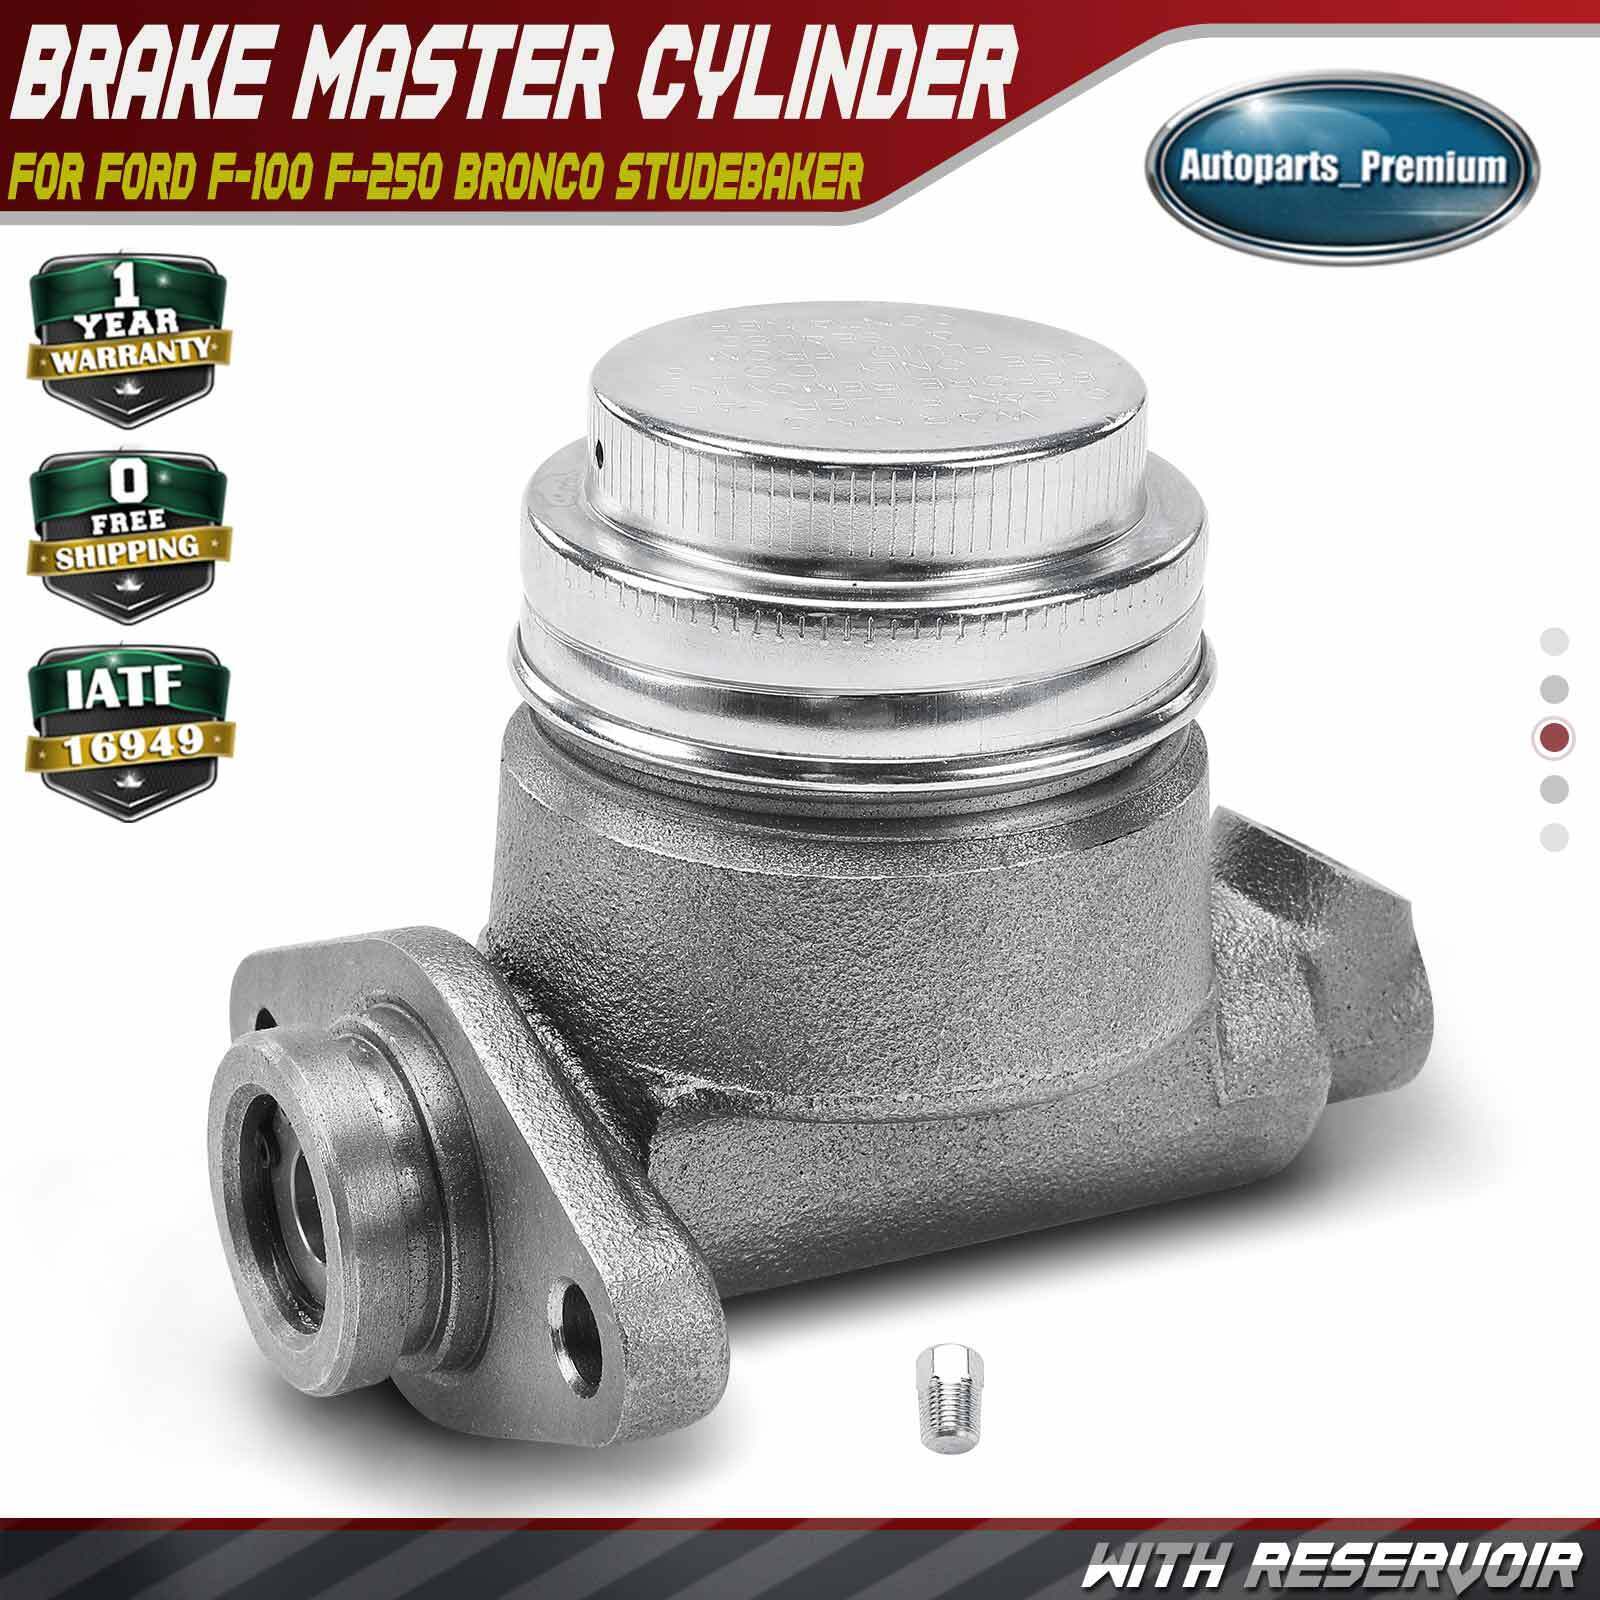 Brake Master Cylinder w/Reservoir for Ford F-100 F-250 Bronco Studebaker 8E5 8E7